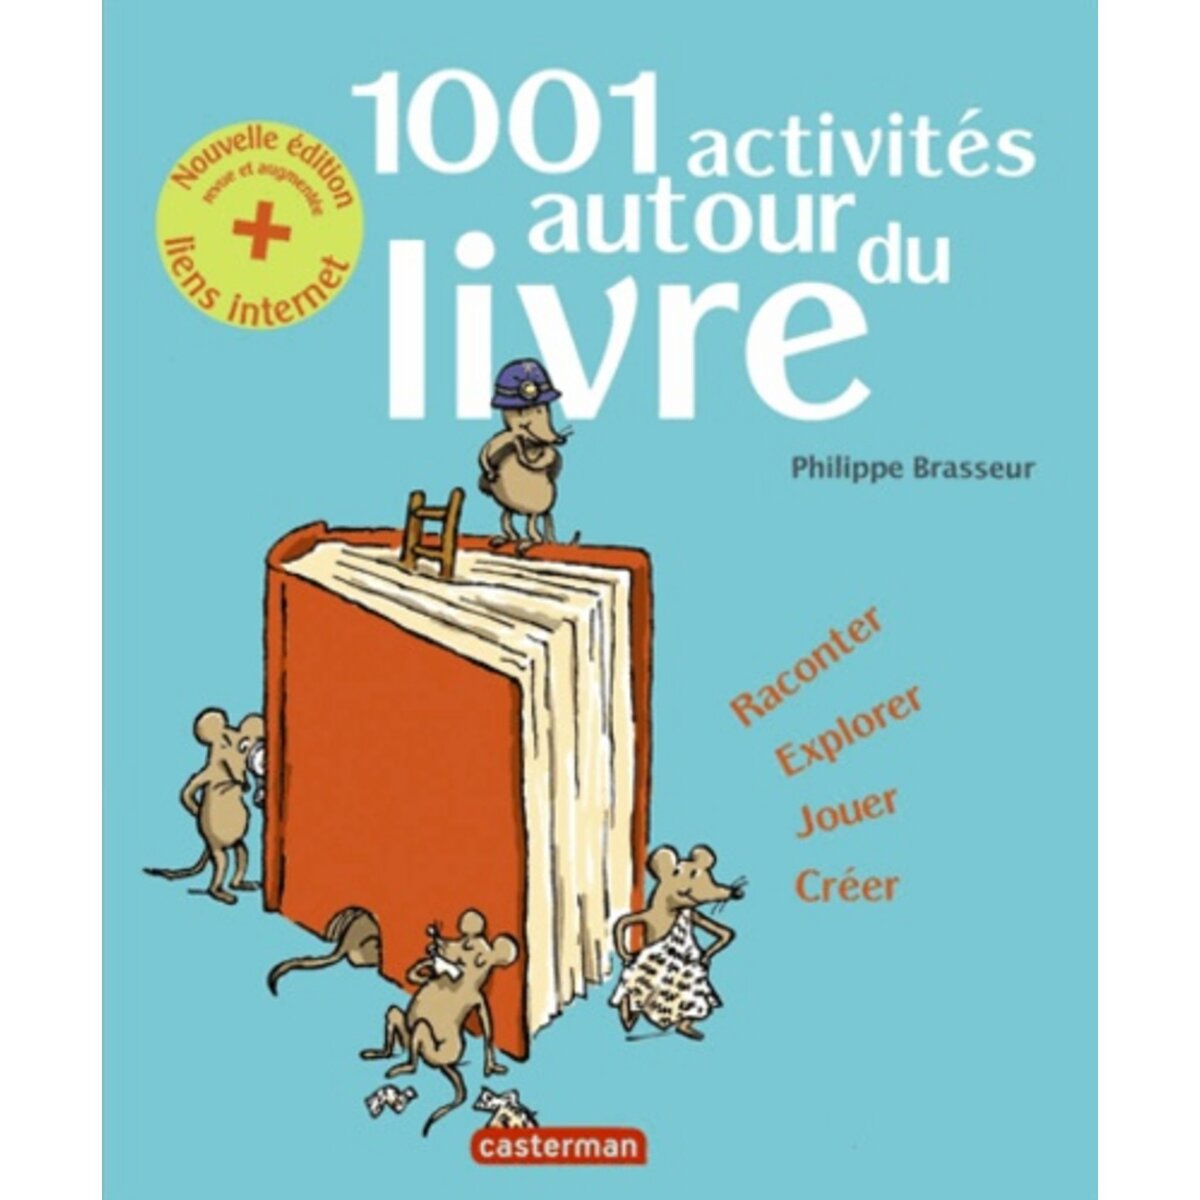  1001 ACTIVITES AUTOUR DU LIVRE. EDITION REVUE ET AUGMENTEE, Brasseur Philippe